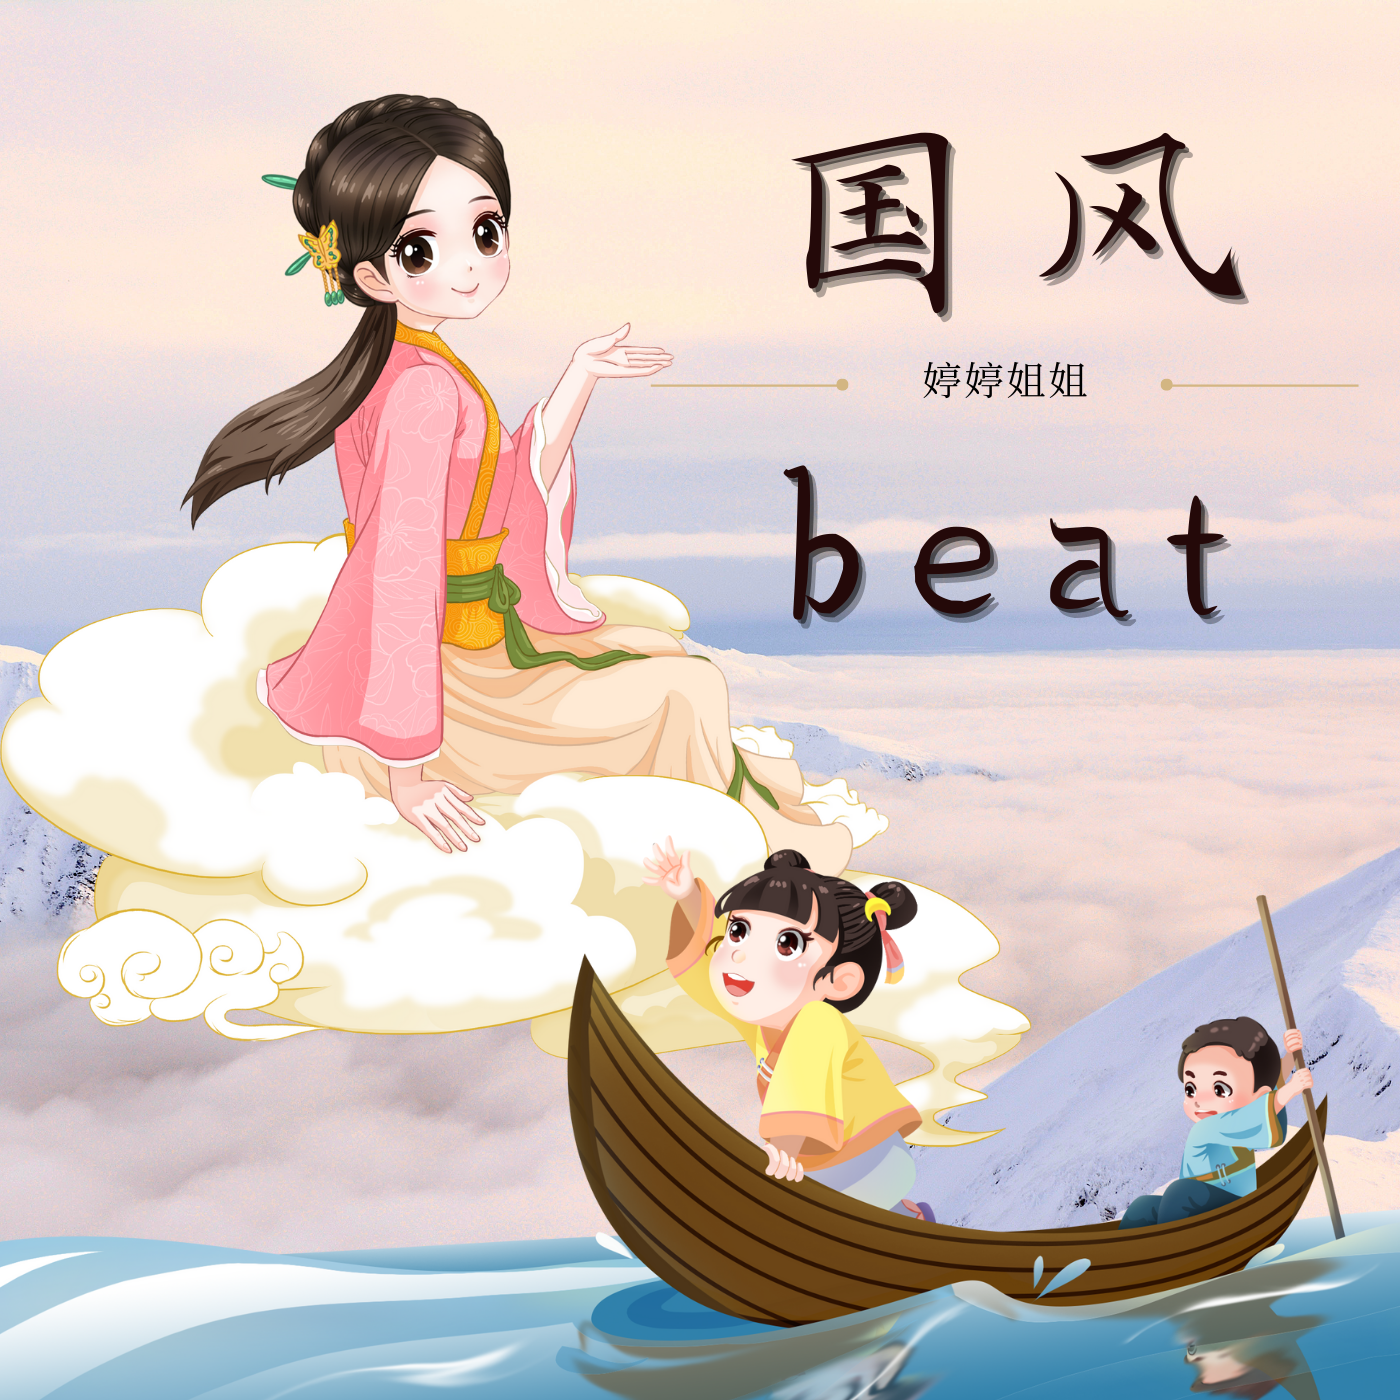 婷婷姐姐 - “数九歌”-中国风/Chinese type beat-BPM100